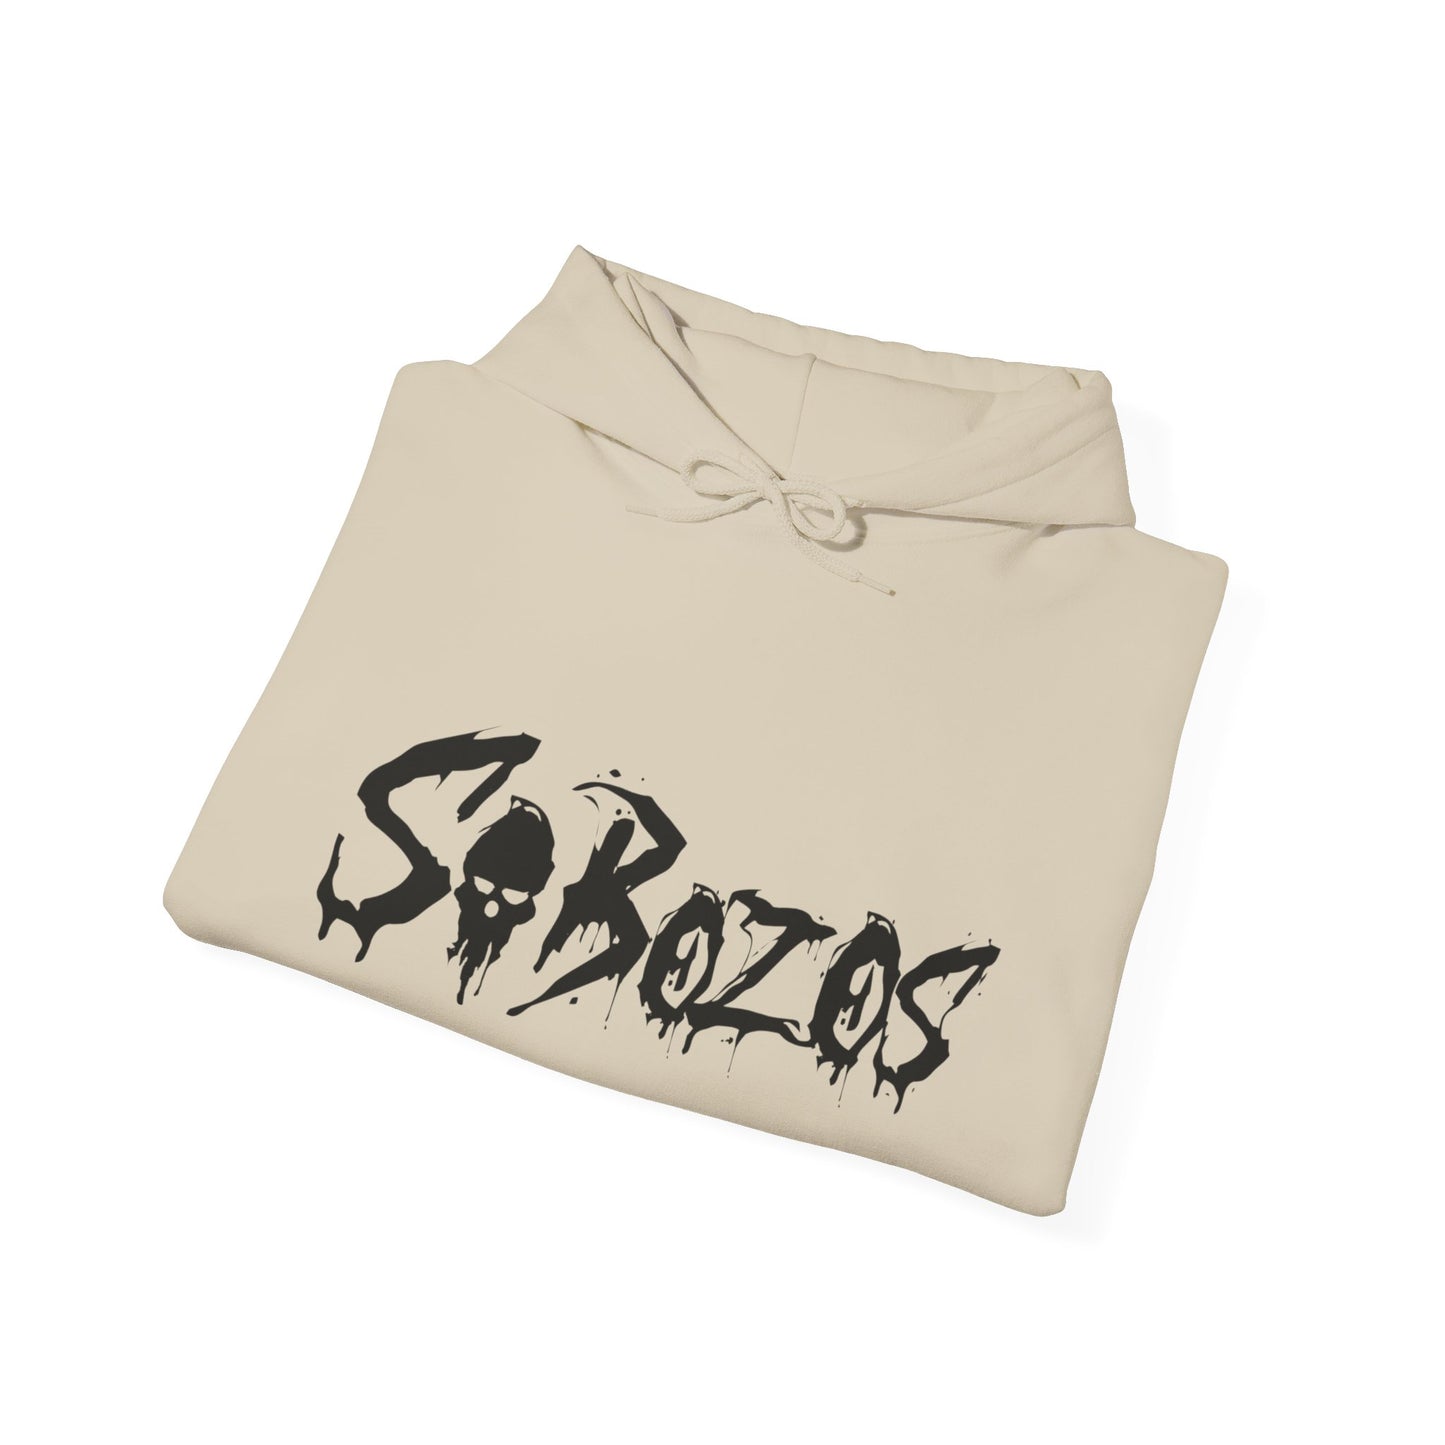 SoBozos Hooded Sweatshirt